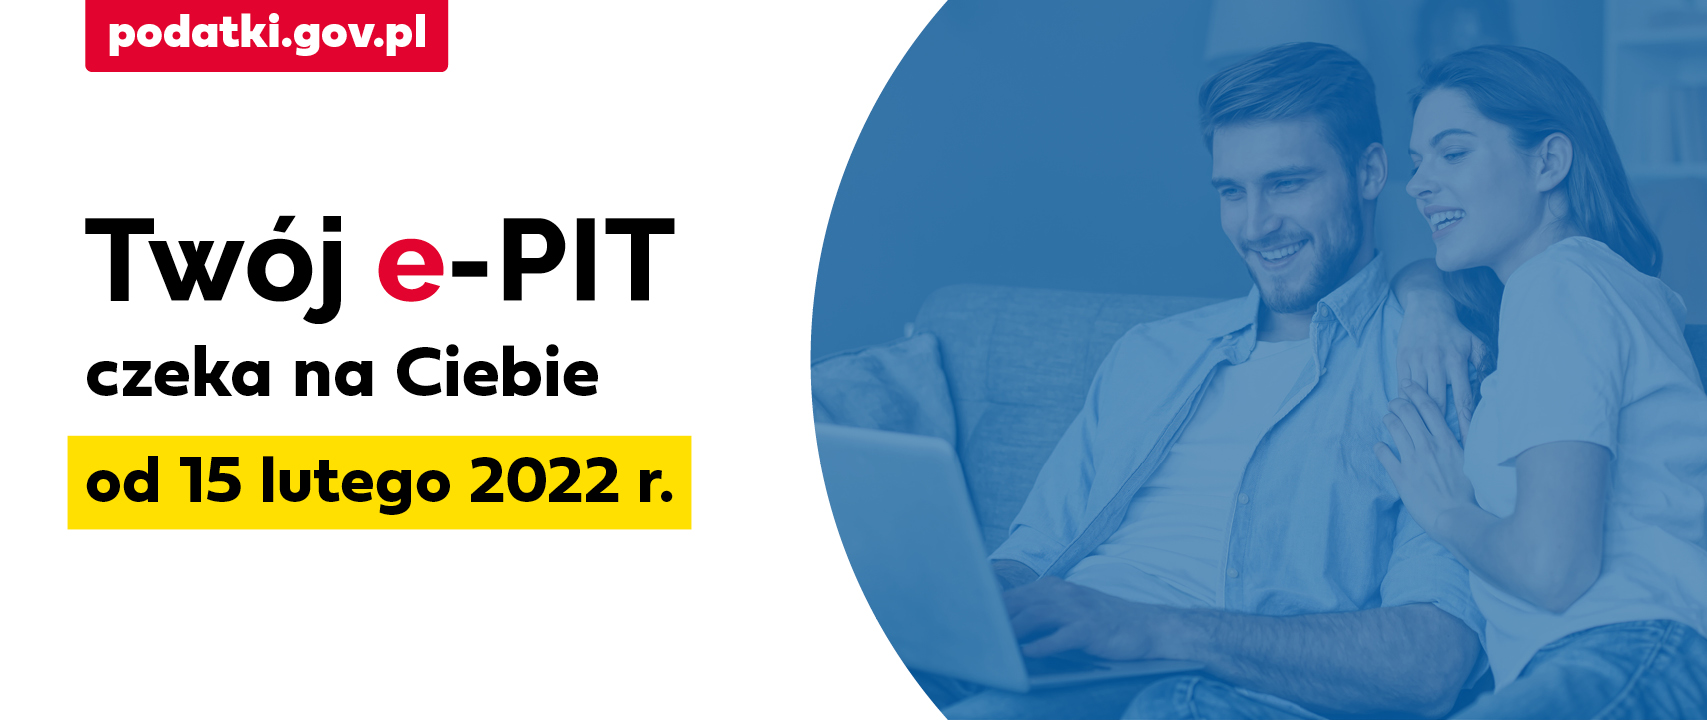 Twój e-PIT czeka na Ciebie do 15 lutego 2022 r.